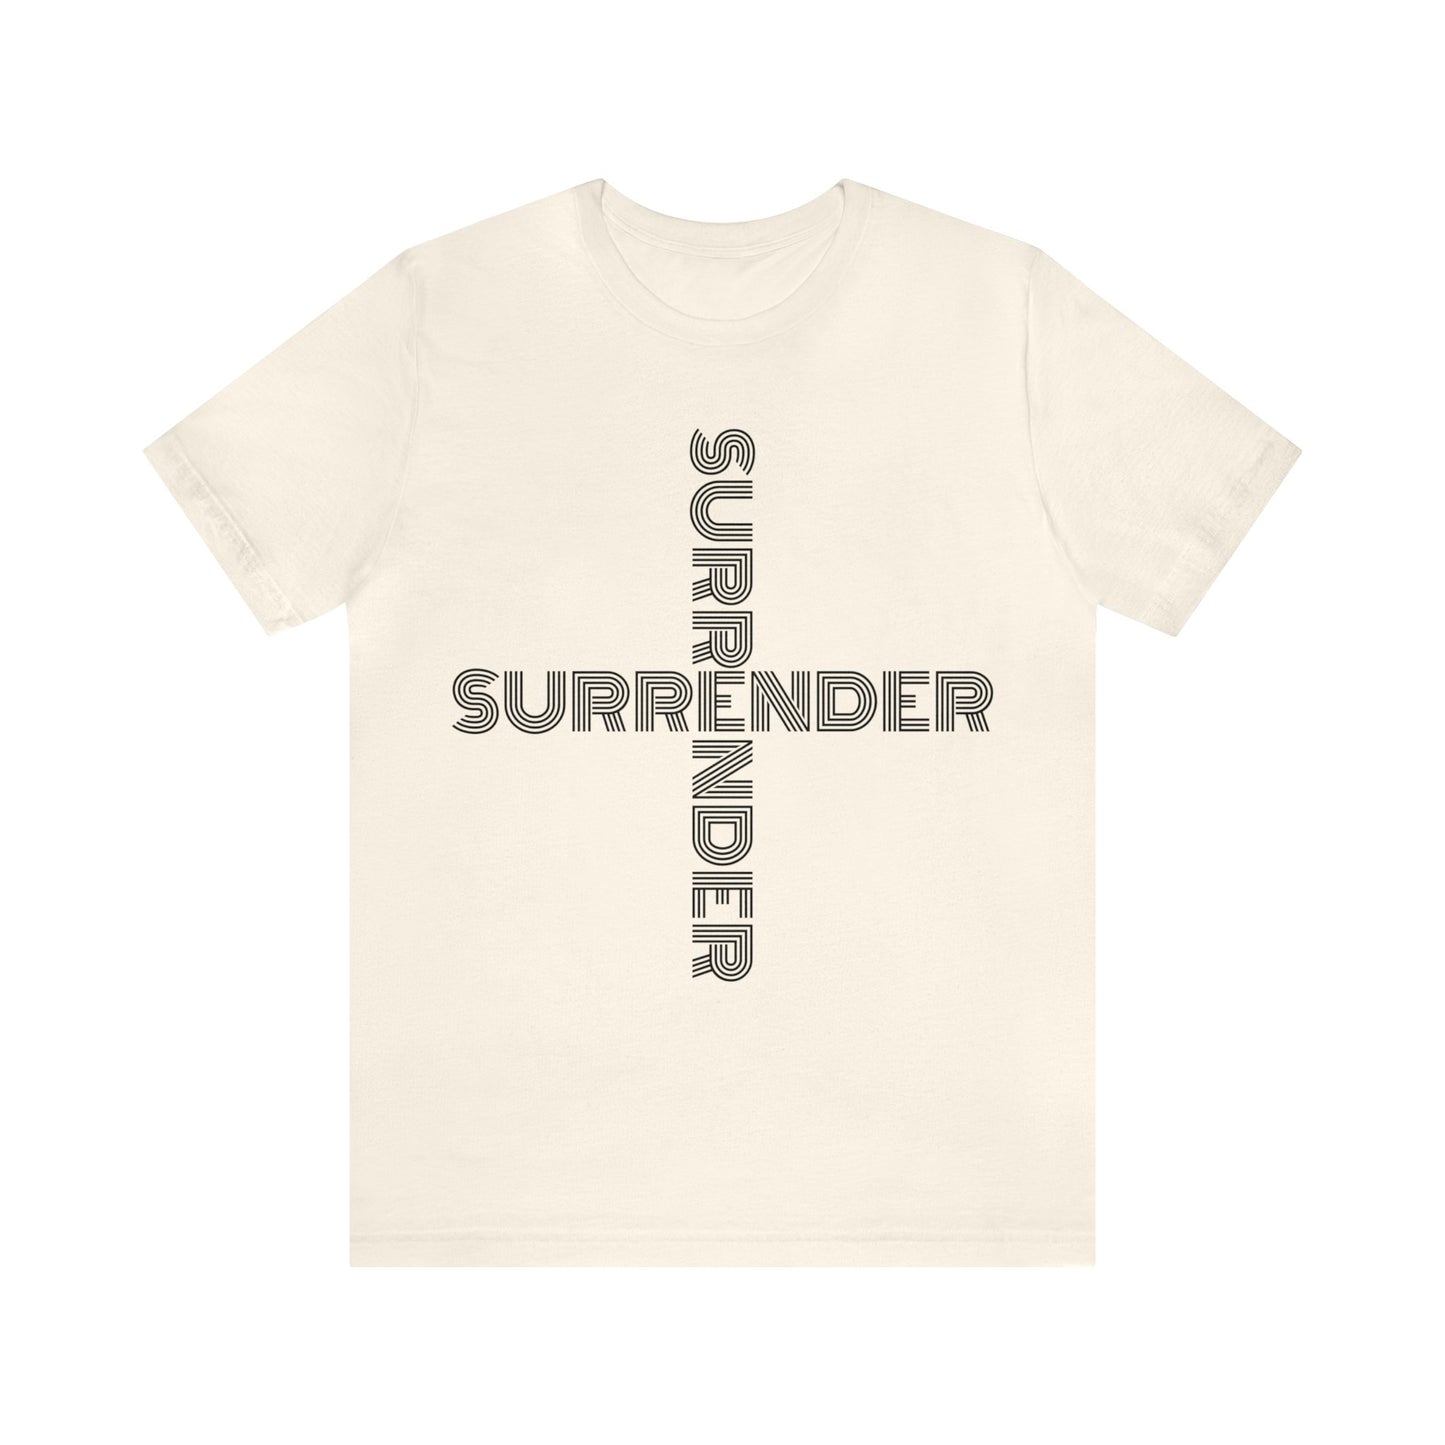 "SURRENDER" Jersey Short Sleeve Tee